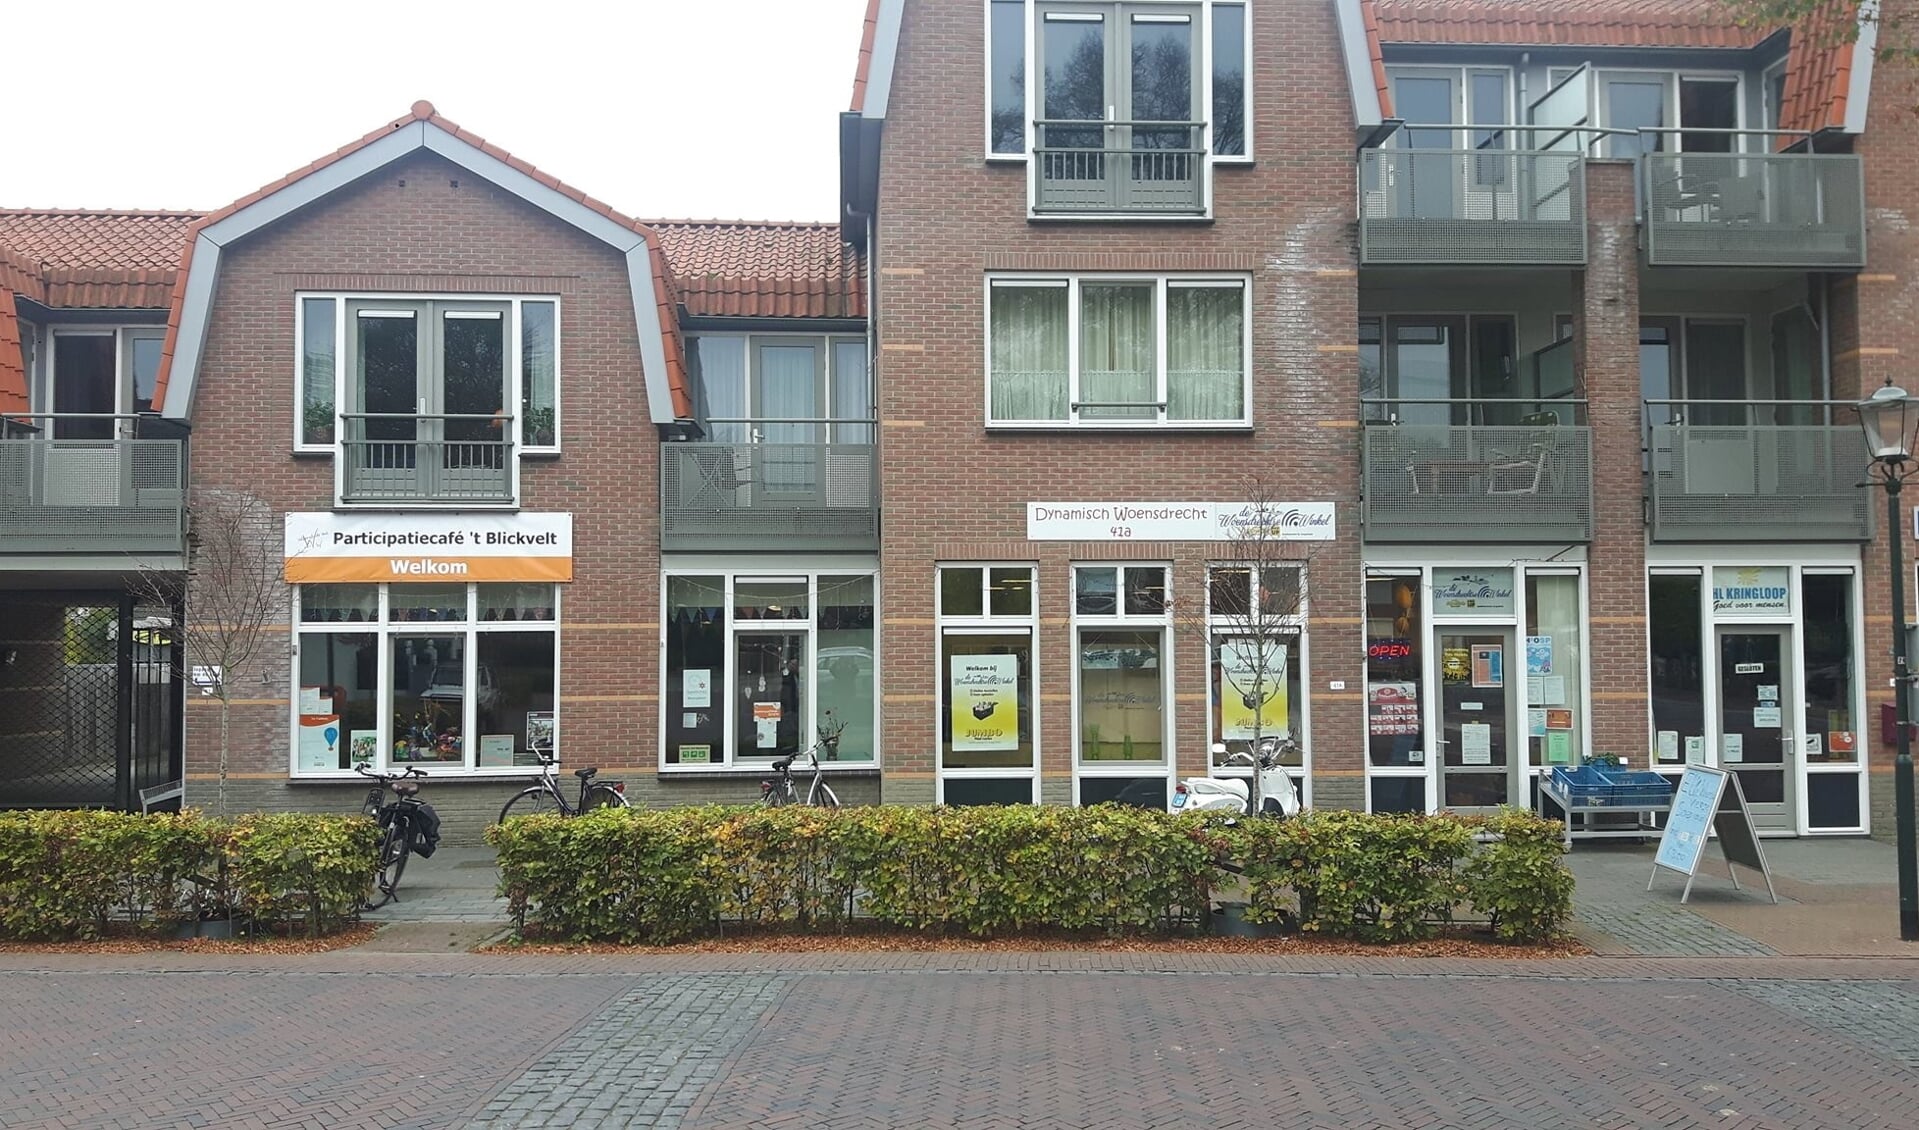 Patricipatiecafé 't Blickvelt breidt steeds verder uit, met inmiddels een mini-supermarkt en een heuse bibliotheek.